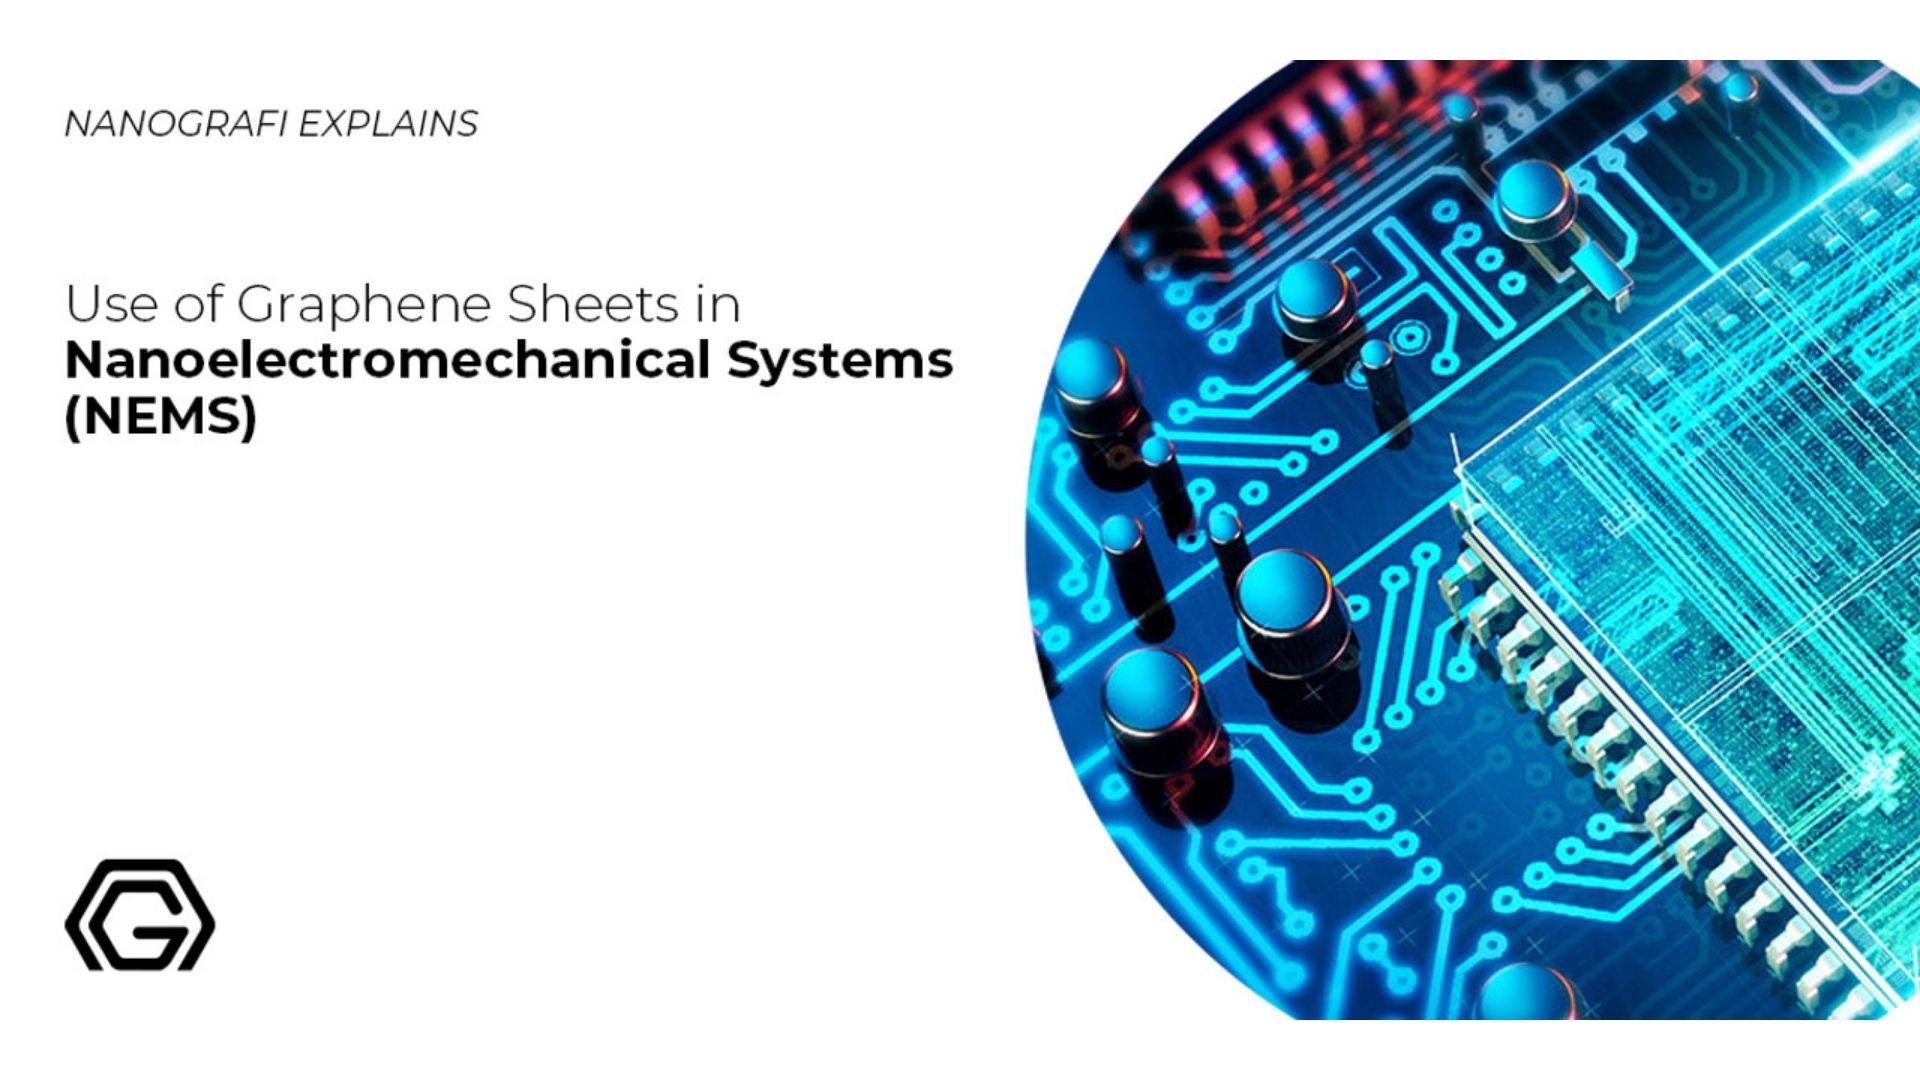 Use of graphene sheets in nanoelectromechanical systems (NEMS)